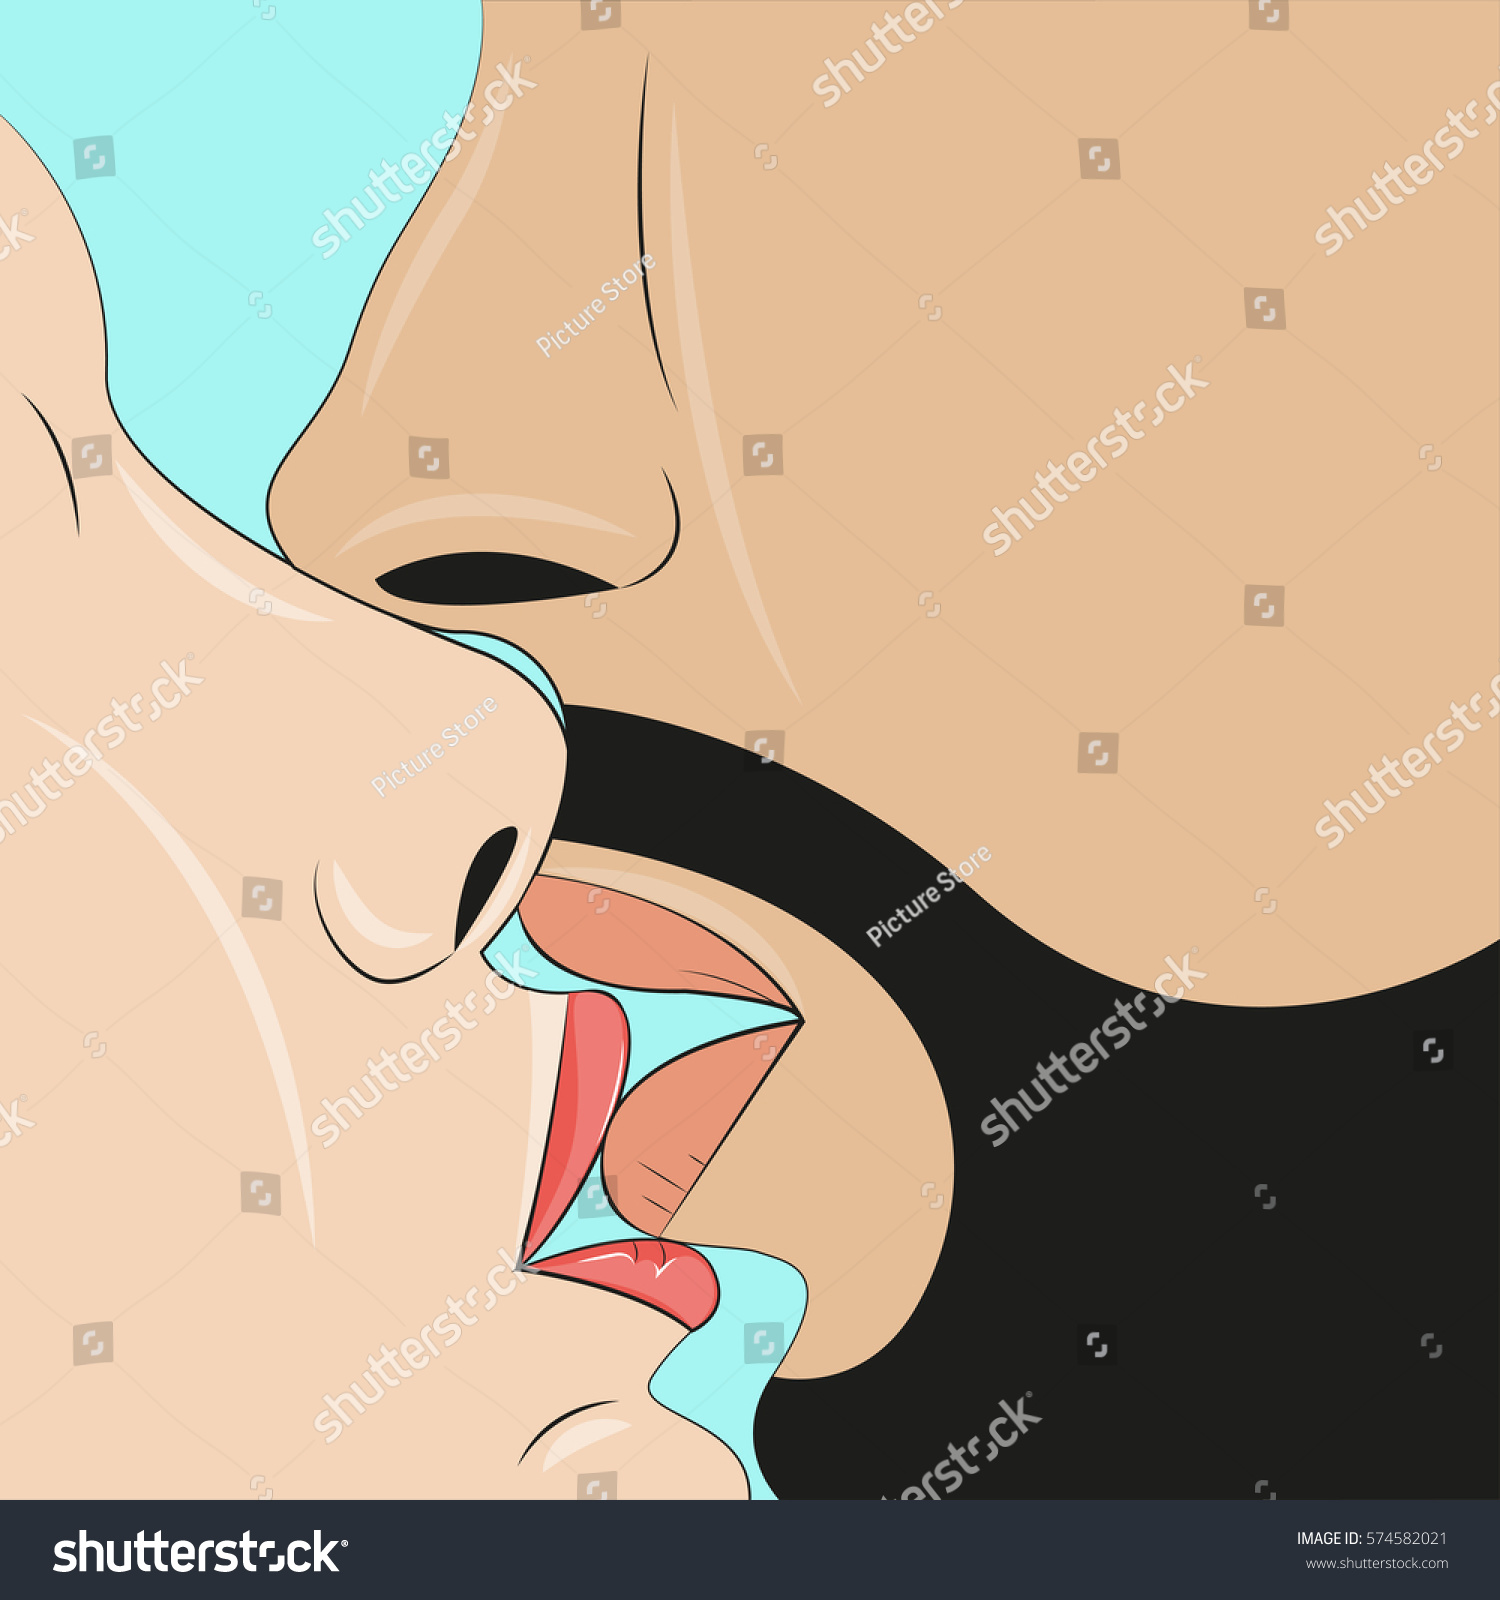 Kissing Tongue French Kiss